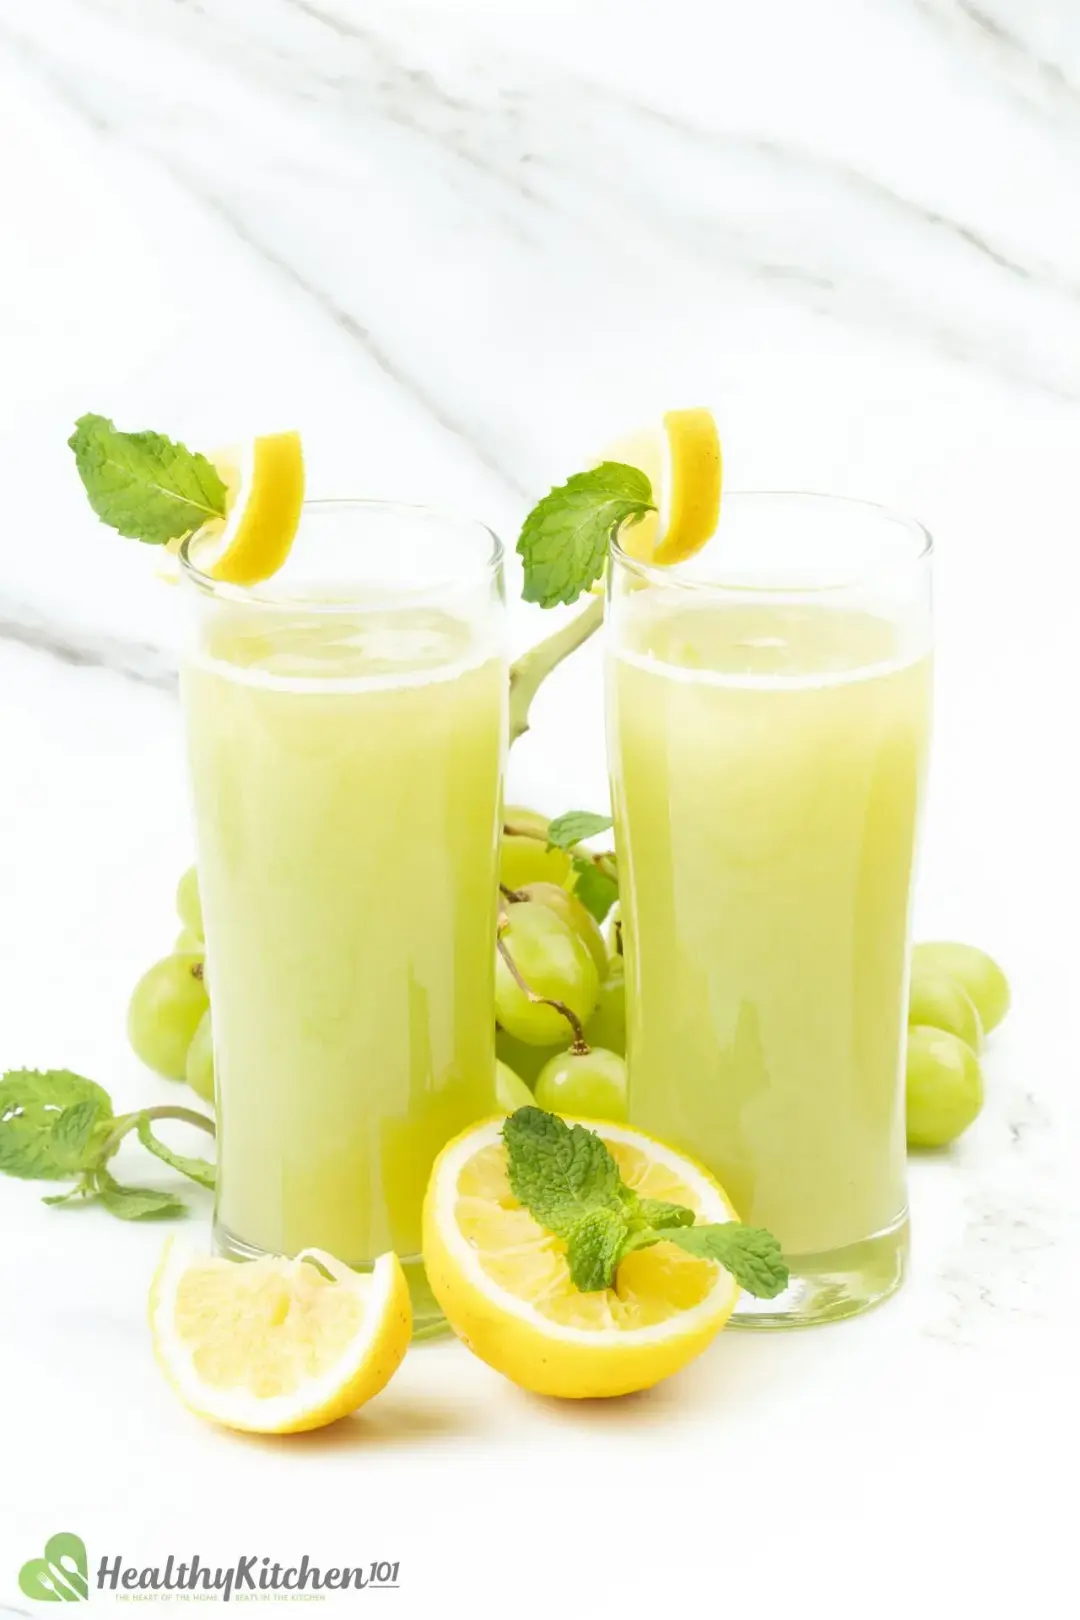 Green Grape Juice Recipe Healthykitchen101